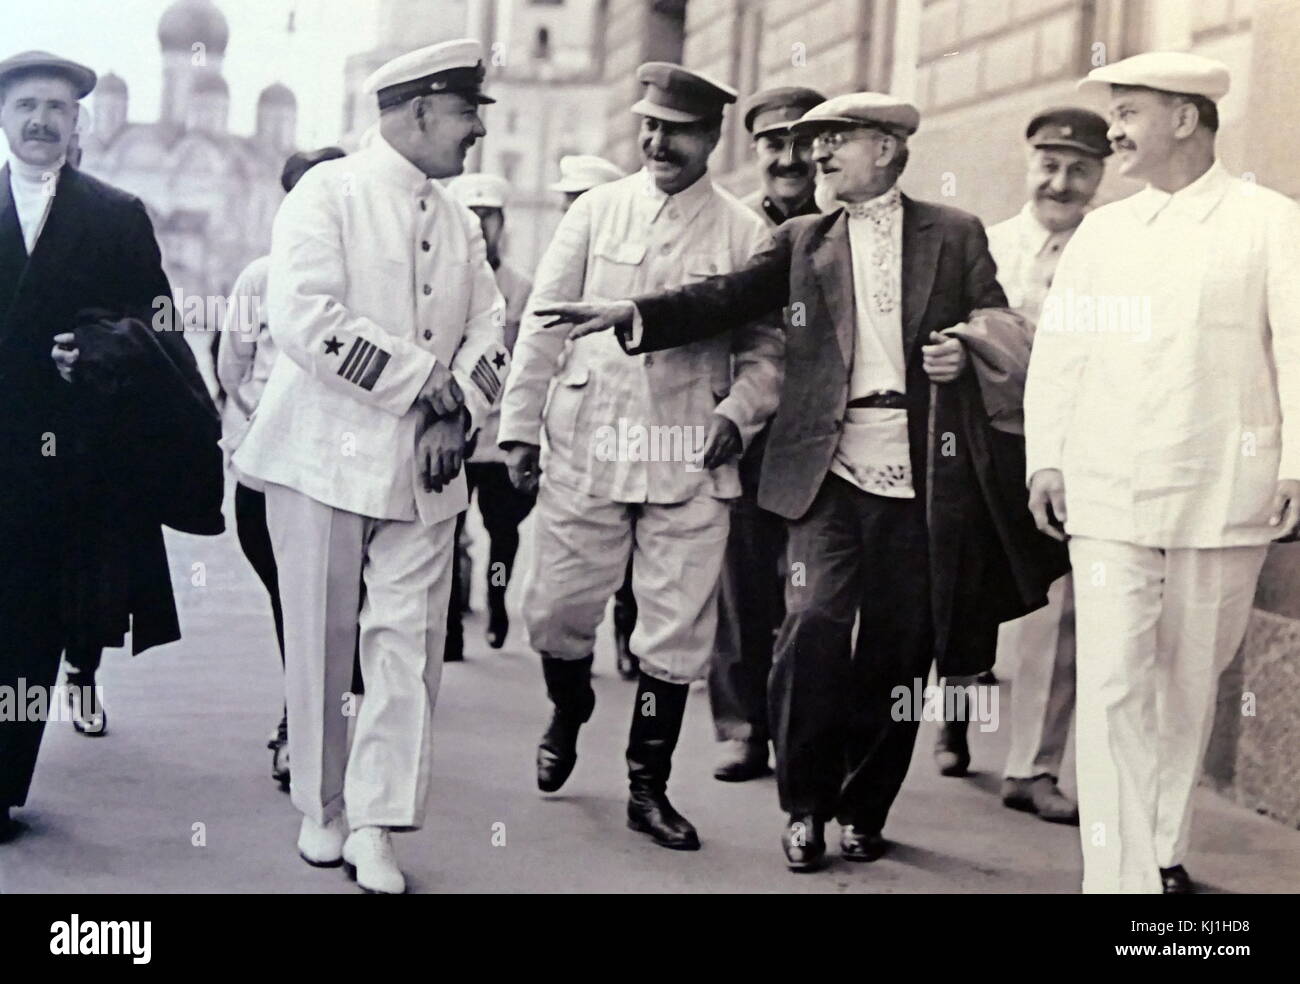 Membri della Russia sovietica del Politburo della CPSU e il governo sovietico. Mosca. 1936. Da sinistra a destra: A.A.Andreev, Voroshilov è, Stalin, M.IKalinin, L.M.Kaganovich, GK Ordzhonikidze, VM Molotov. Foto Stock